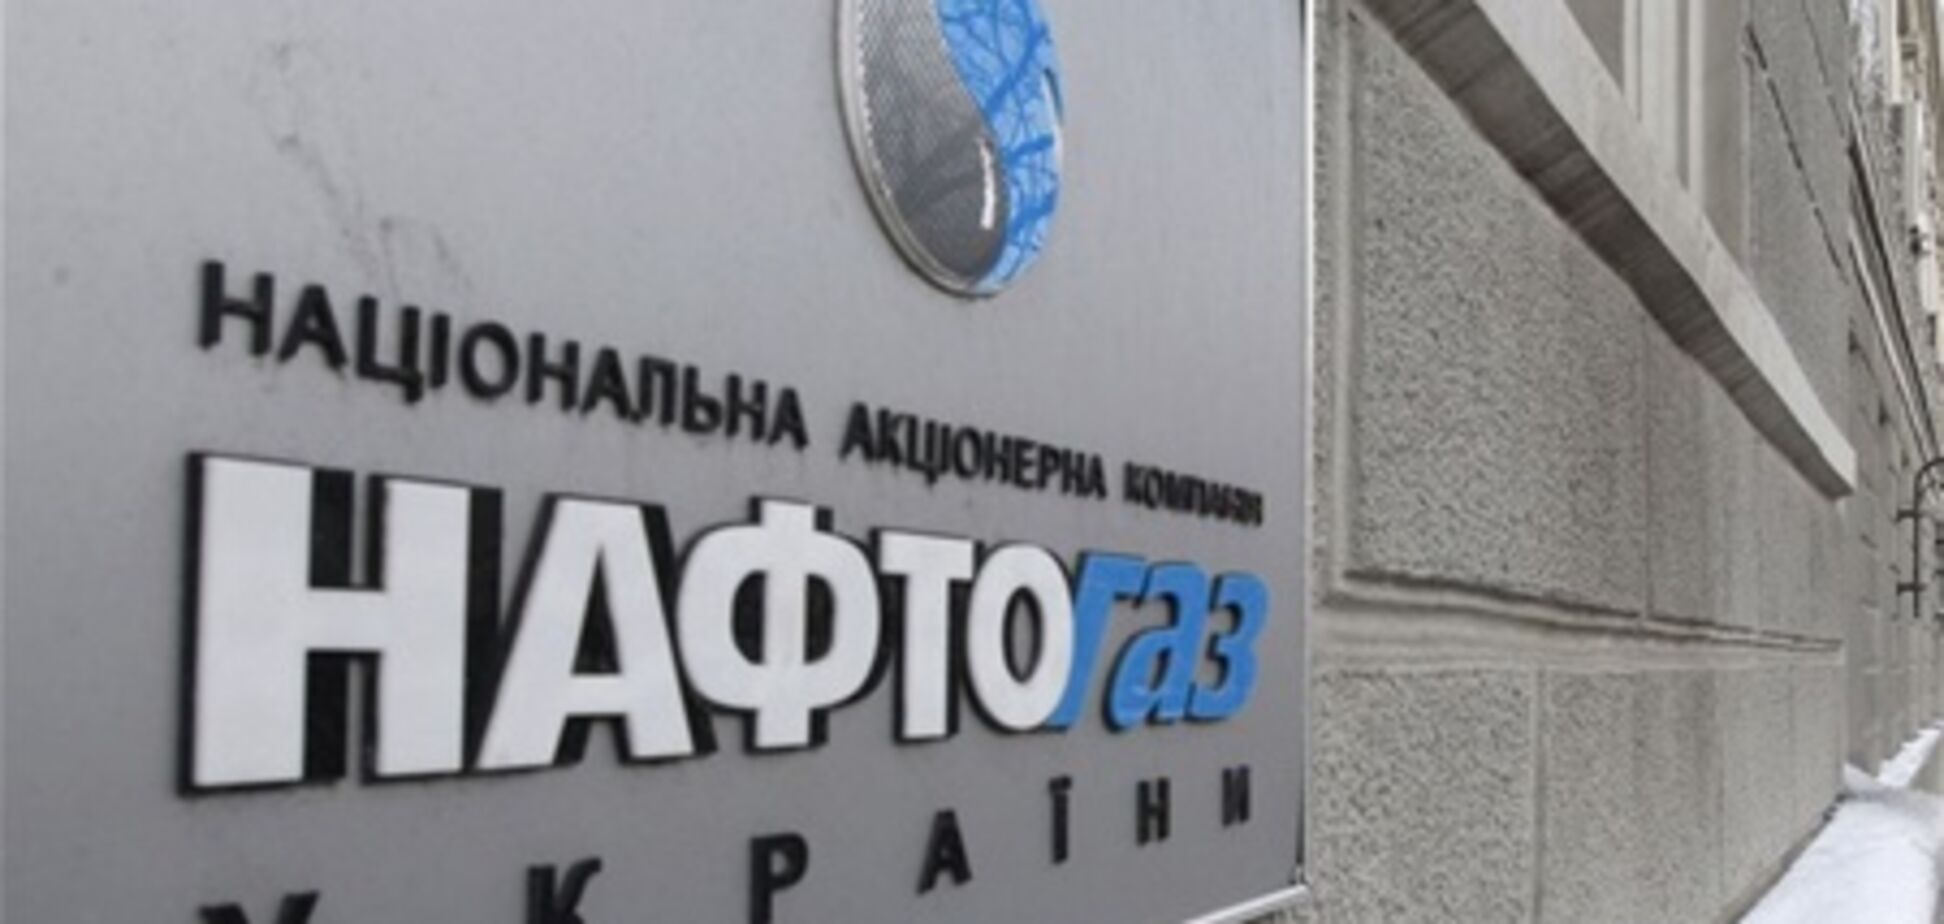 'Нафтогаз' не намерен оплачивать счет 'Газпрома' - СМИ